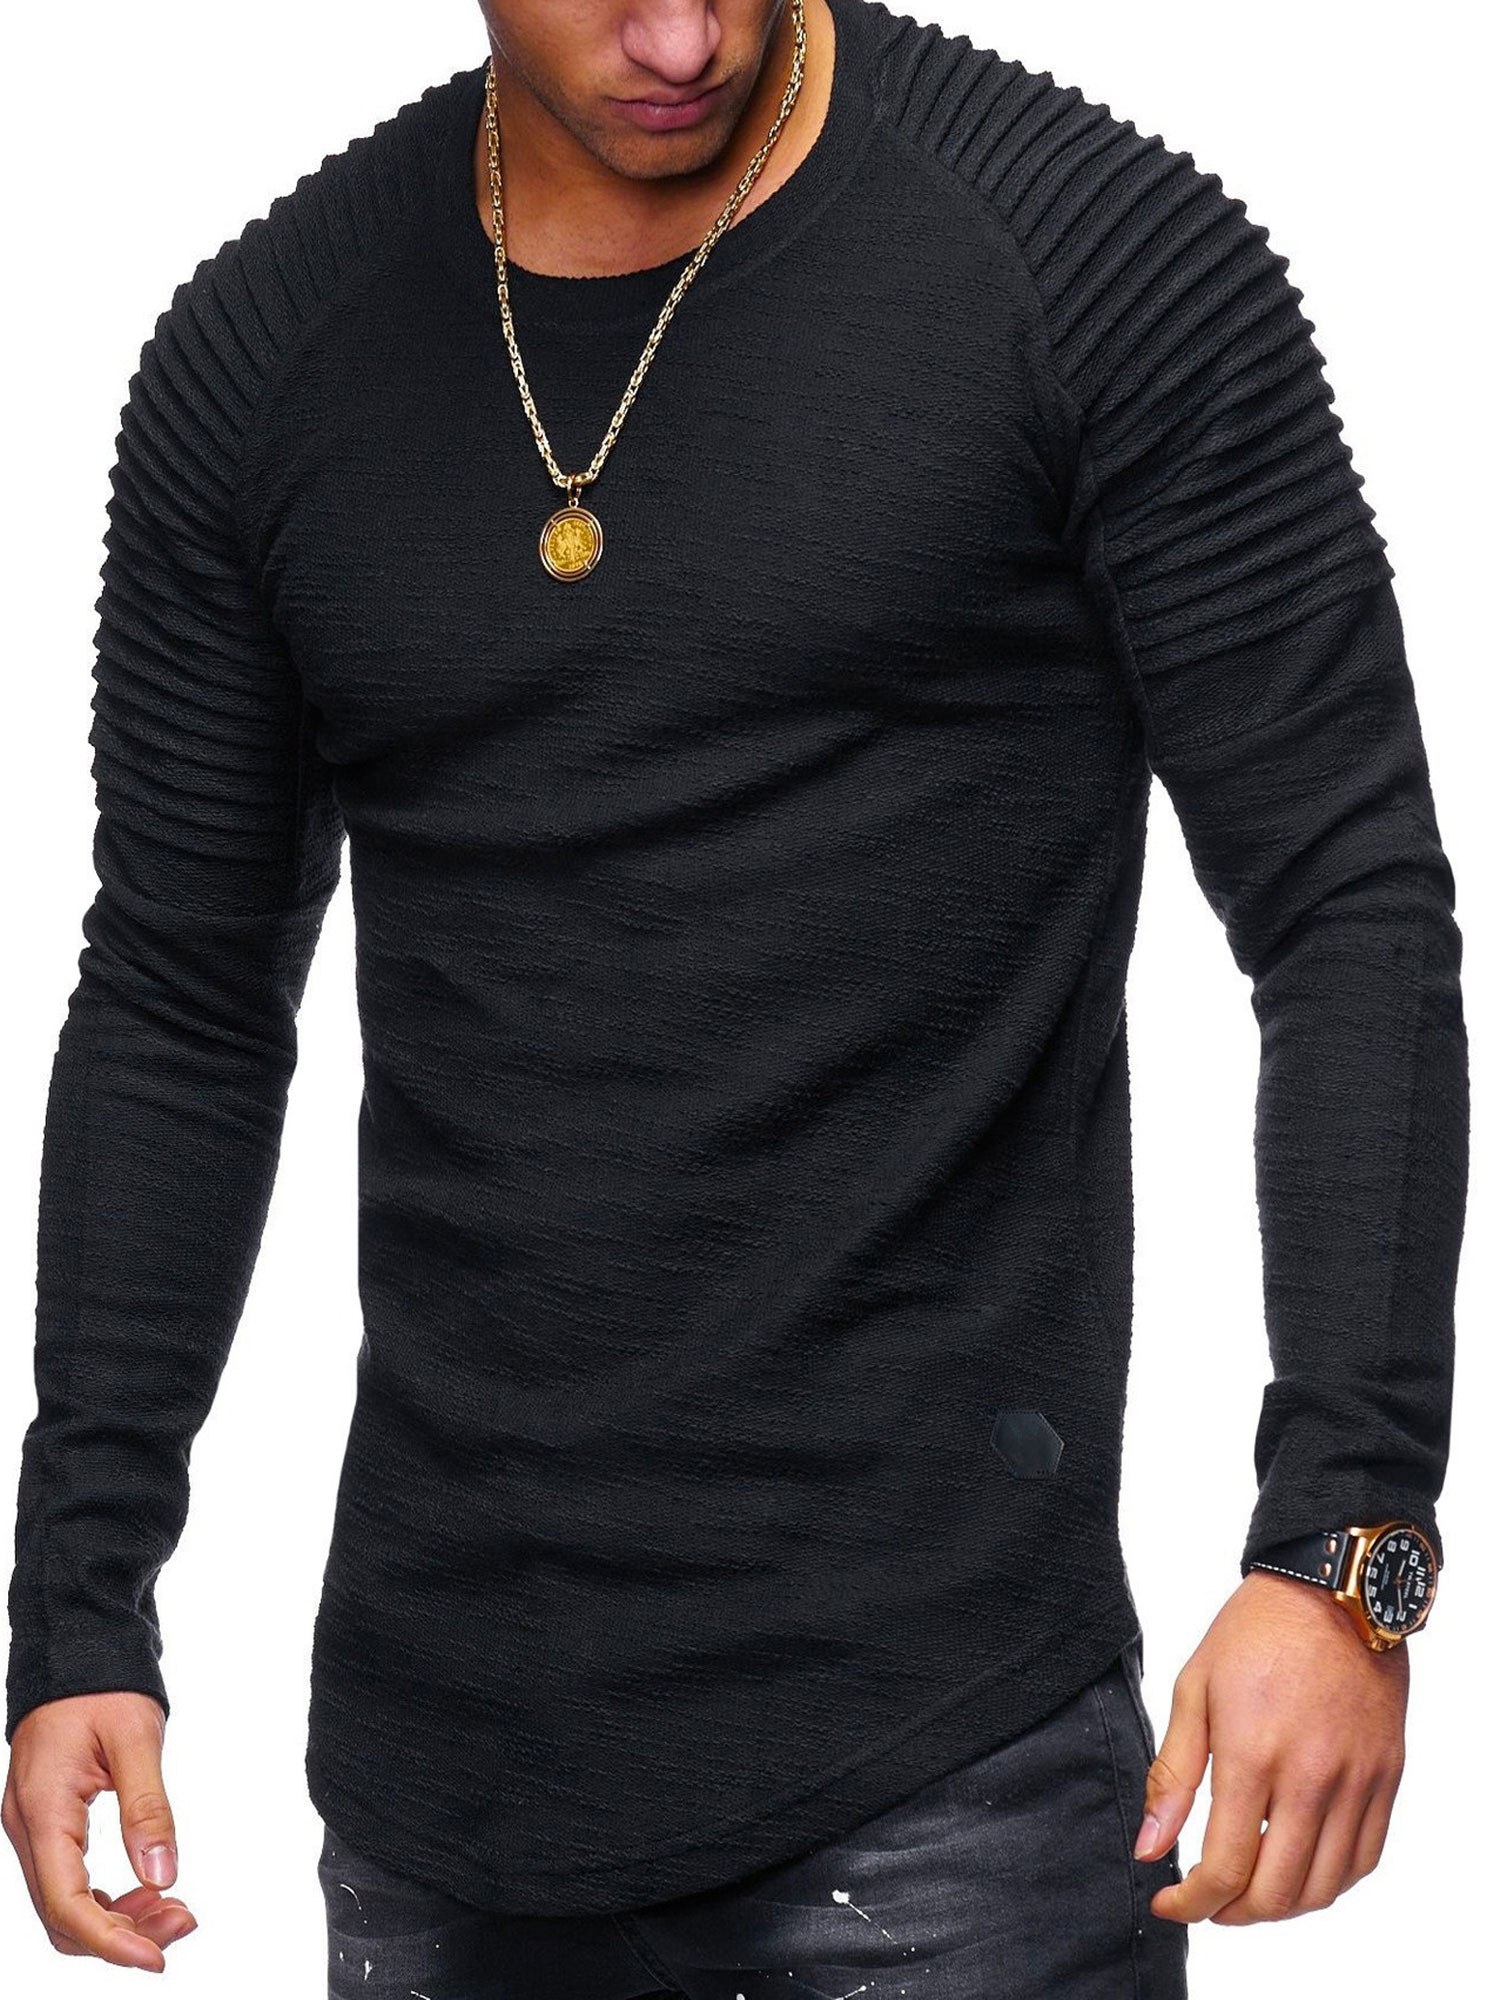 Unomatch Men Elegant Design Long Sleeved Solid T-Shirt